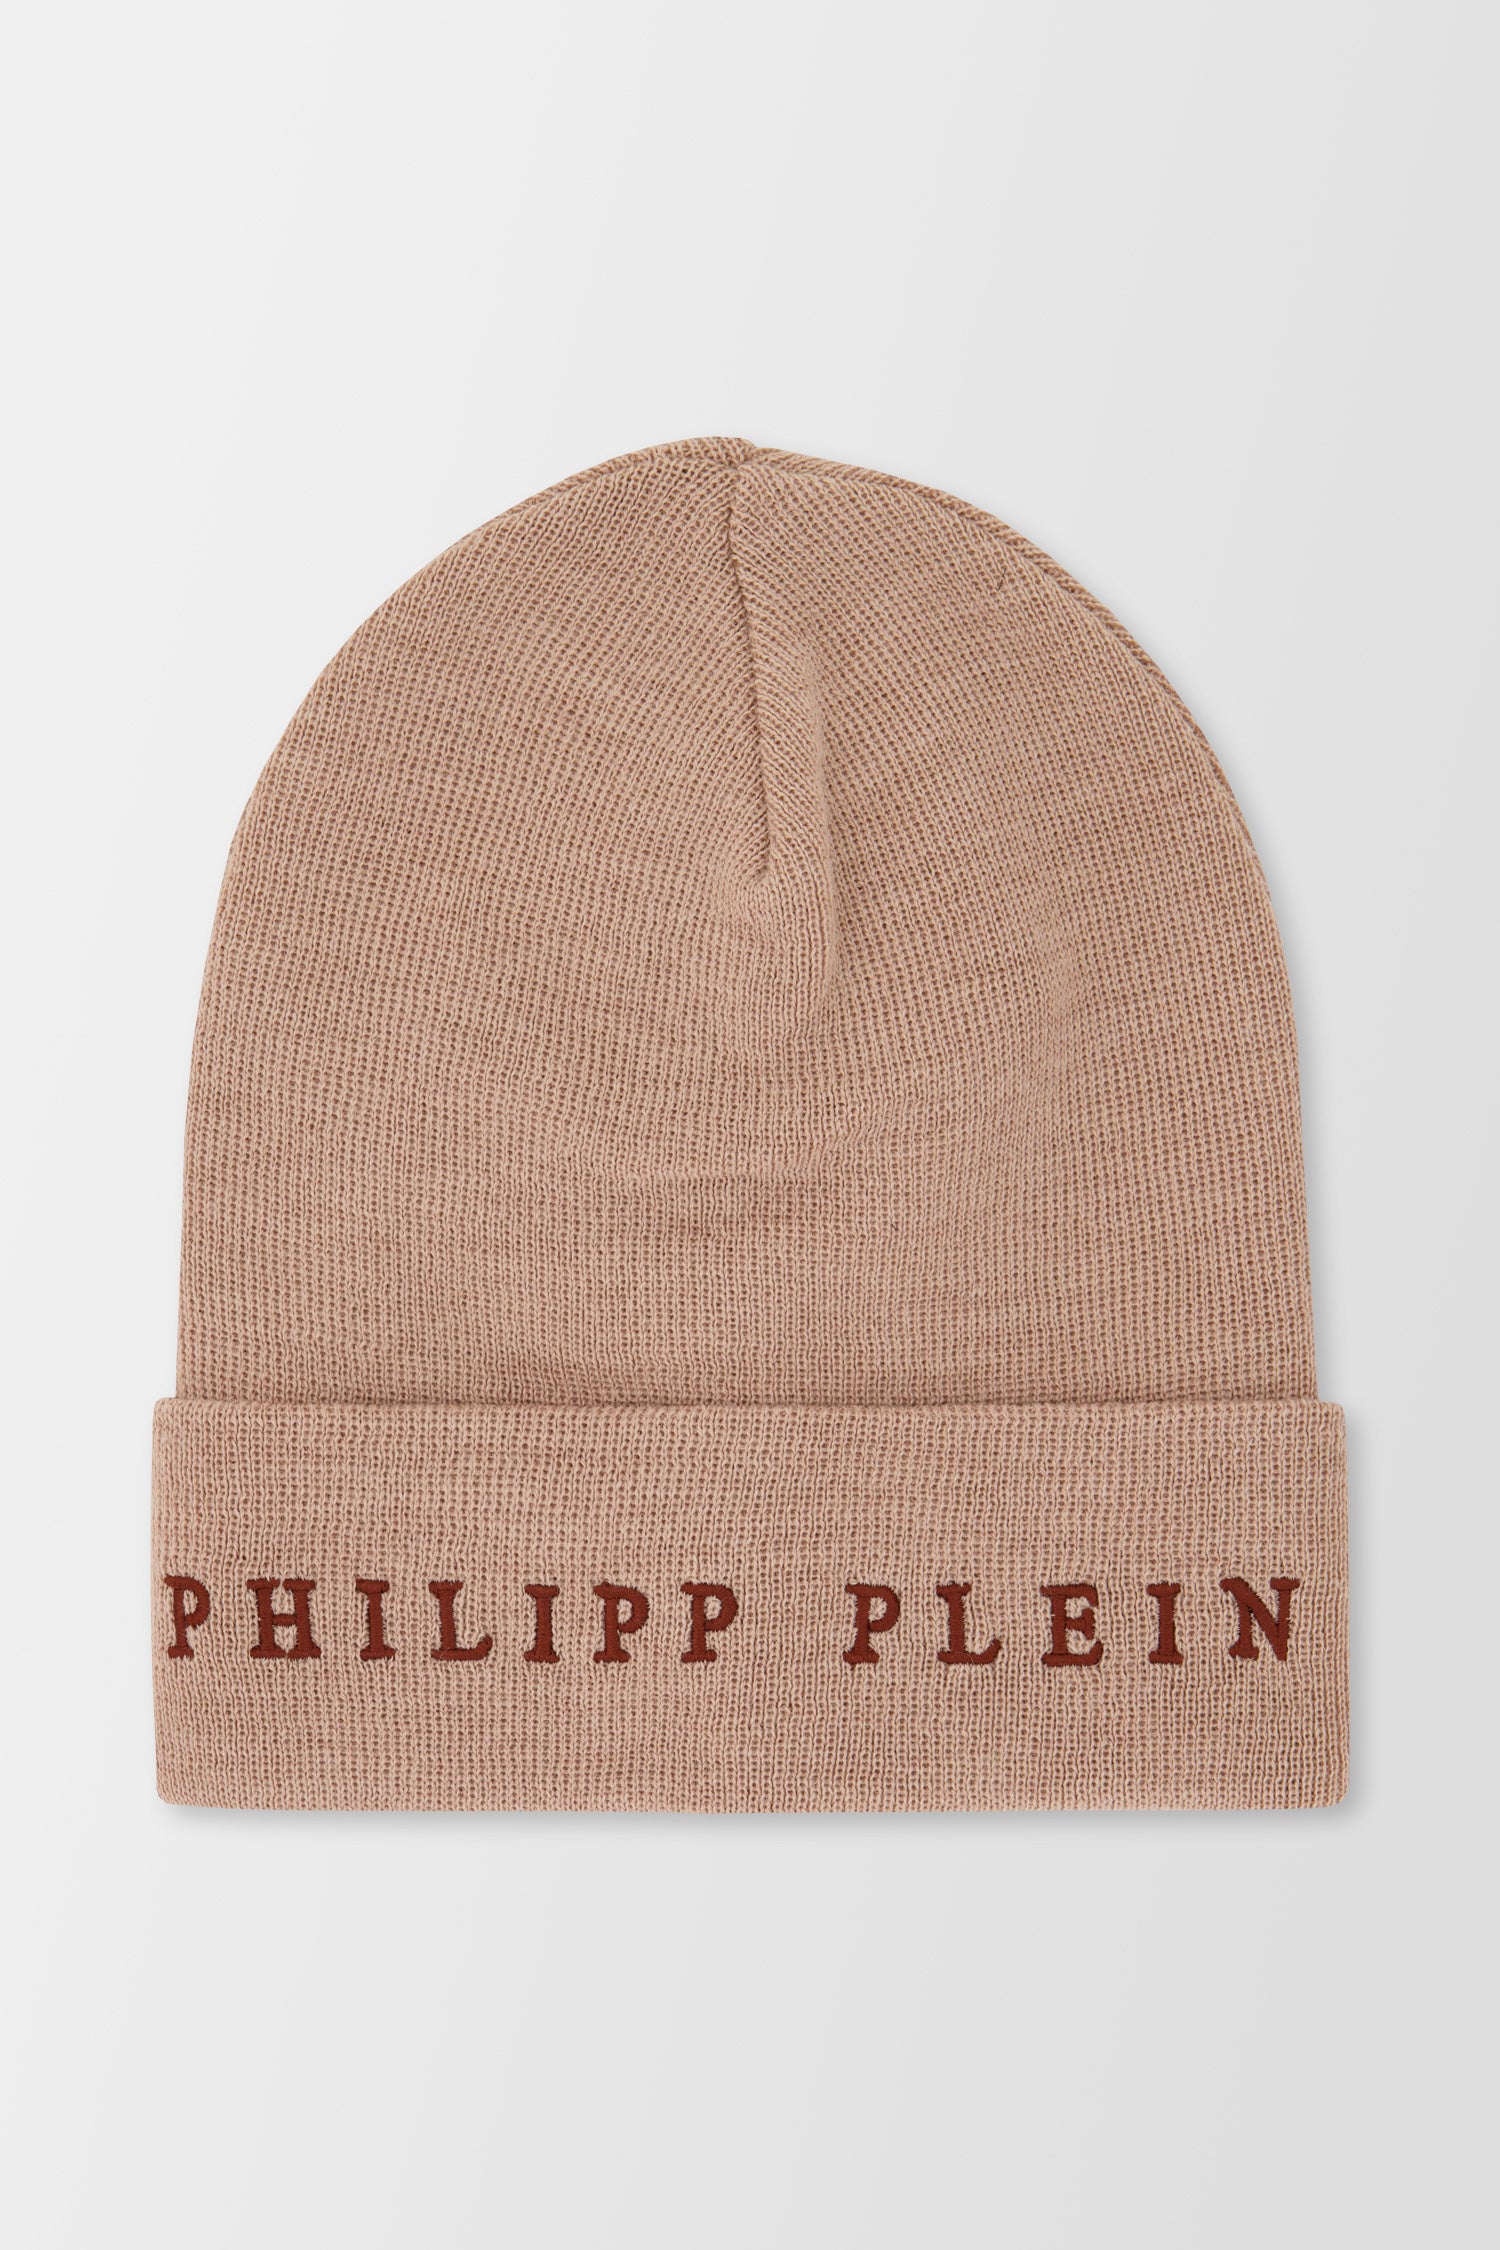 Philipp Plein Beige Hat